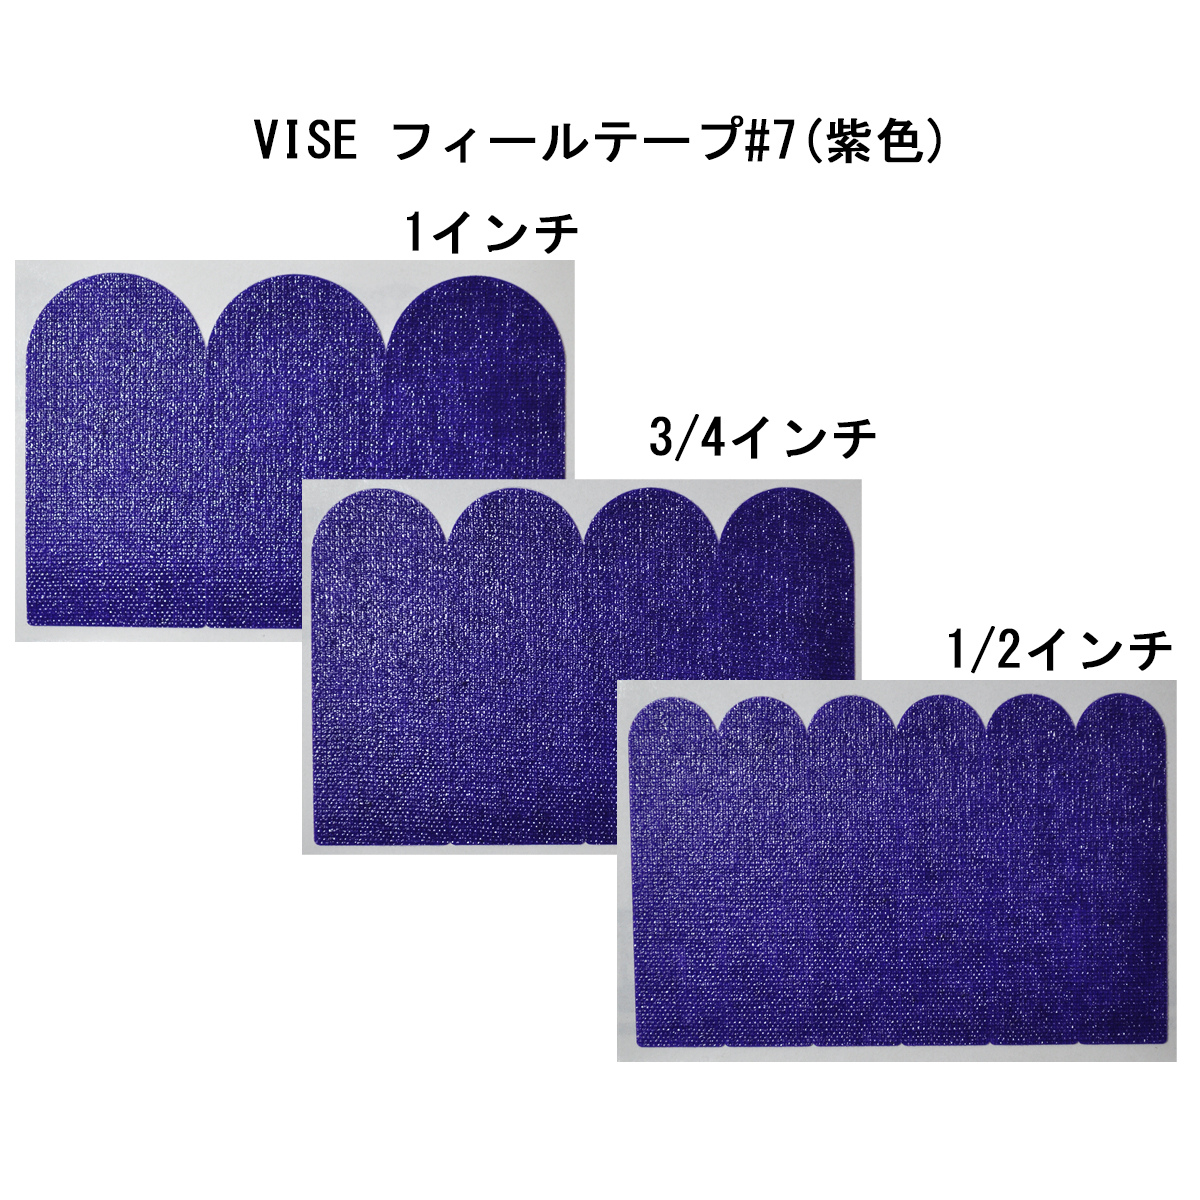 【12袋セット】VISE フィールテープ#7(紫色)